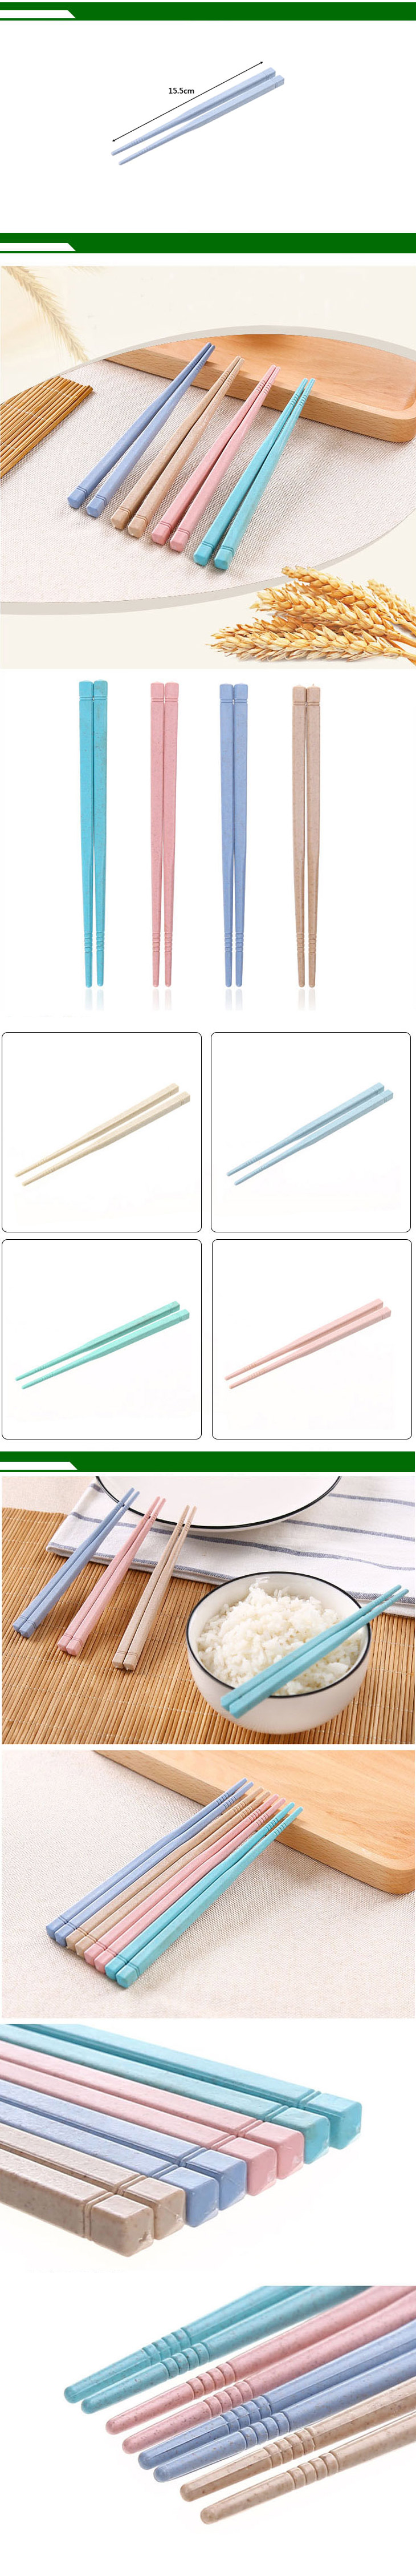 10双装小麦秸秆儿童筷子 无漆无蜡防滑尖头筷子 学生便携餐具 粉色